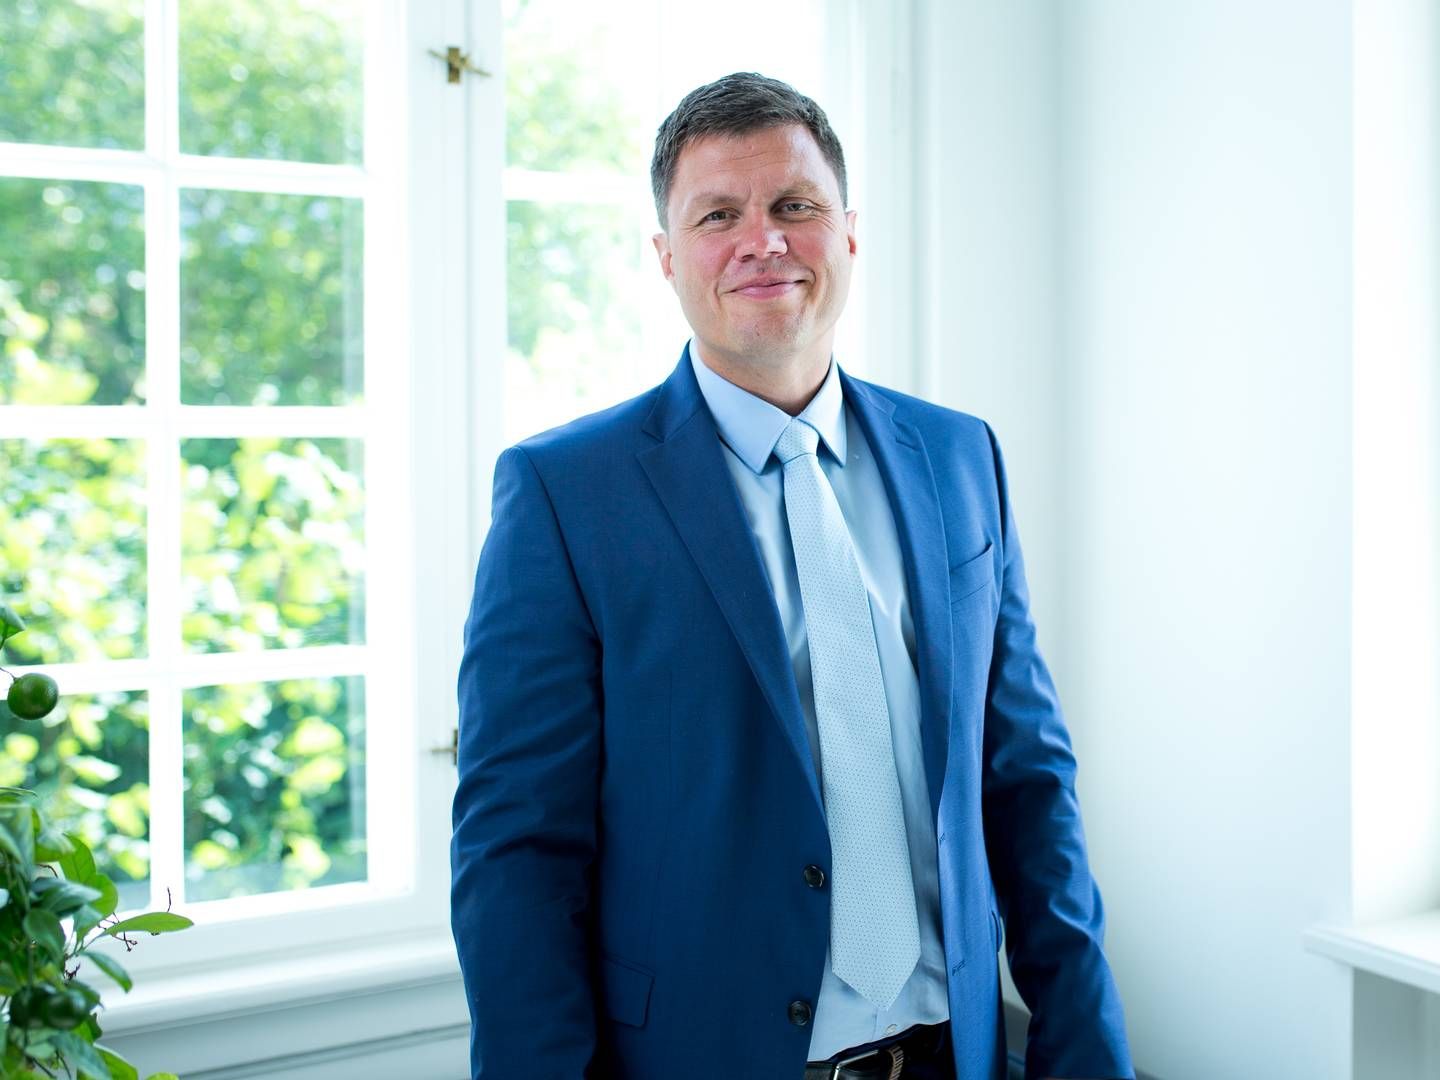 Martin Kibsgaard Jensen, adm. direktør hos projektudbyderen Blue Capital, glæder sig over, at "investorerne har taget godt imod de udbudte projekter" - trods et svært år, som han formulerer det.